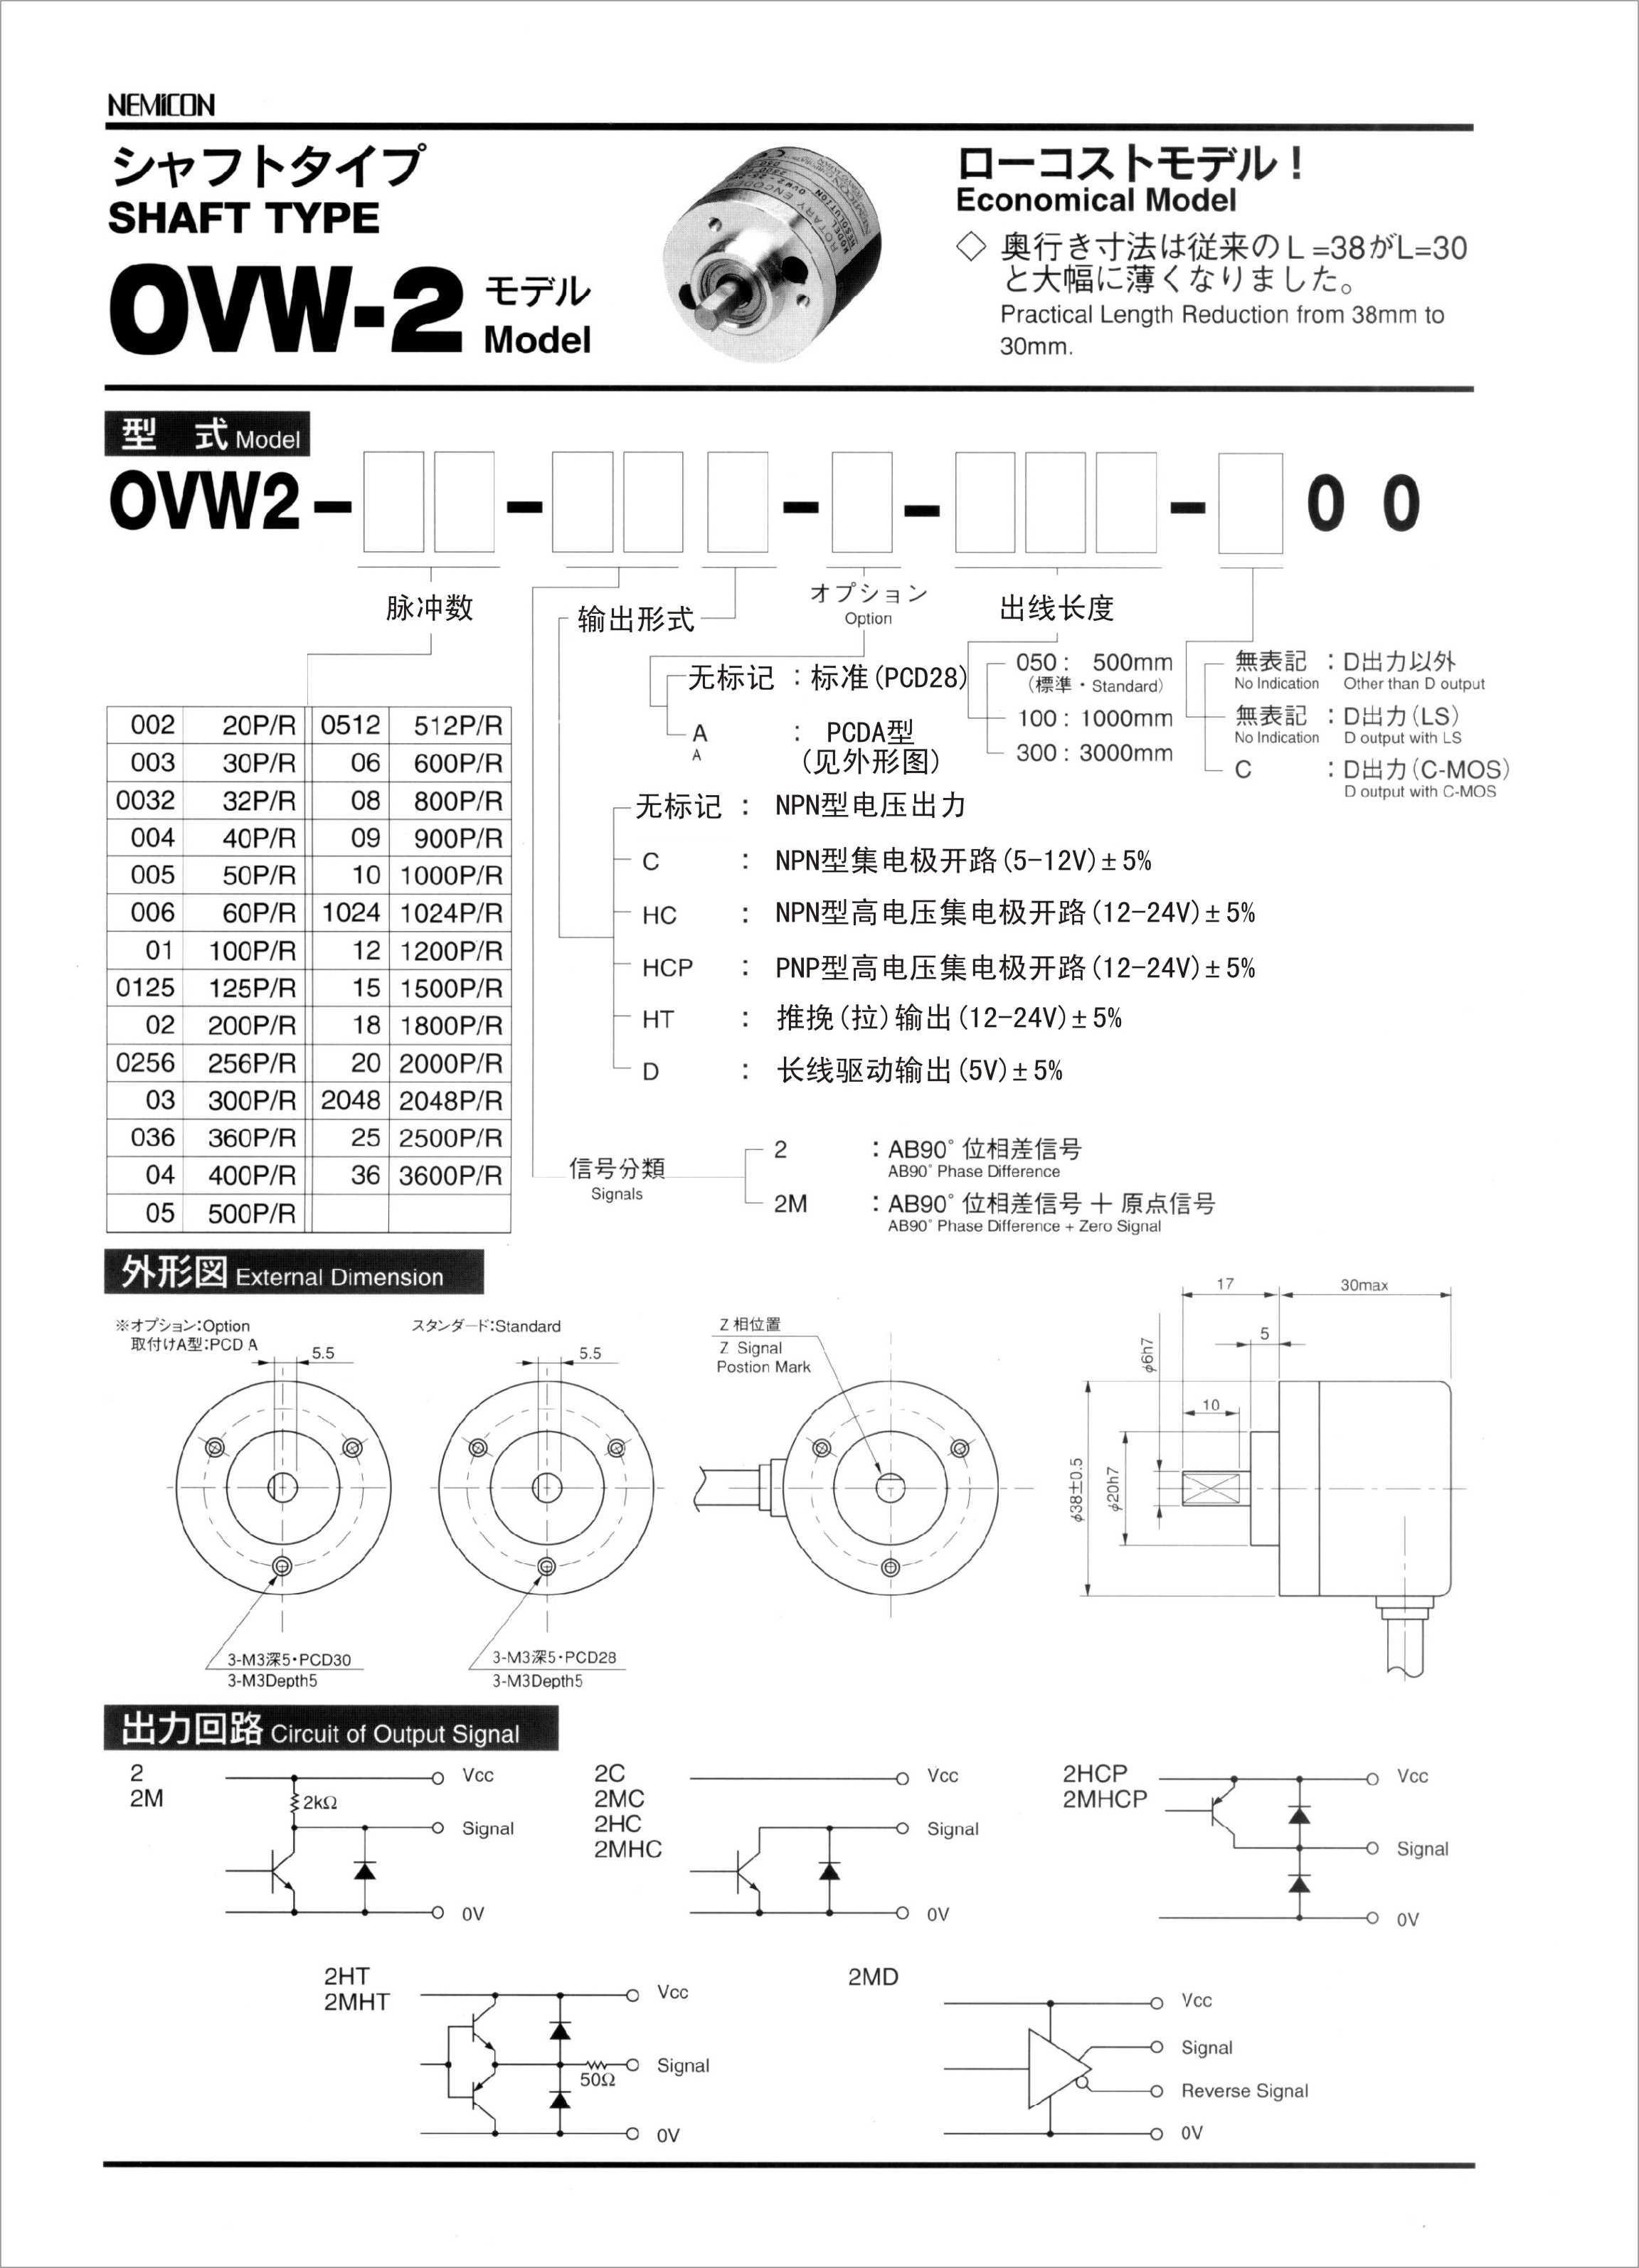 OVW2-25-2MD OVW2-25-2MD,NEMICON,内密控编码器,编码器,内密控